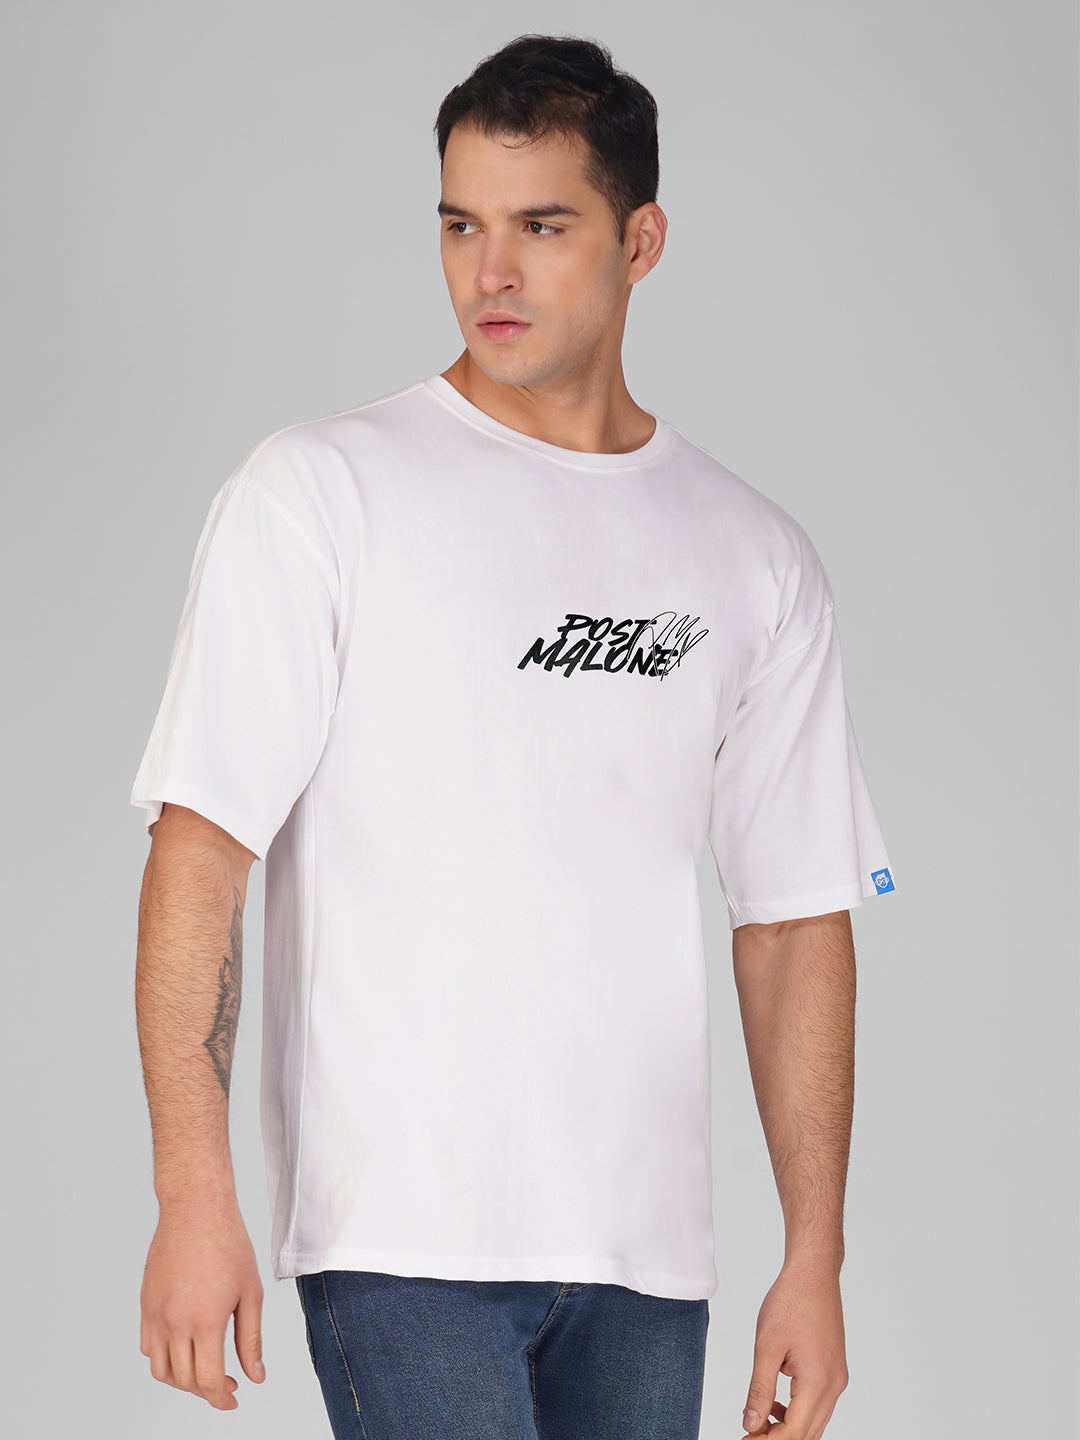 Post Malone Oversized T-Shirt